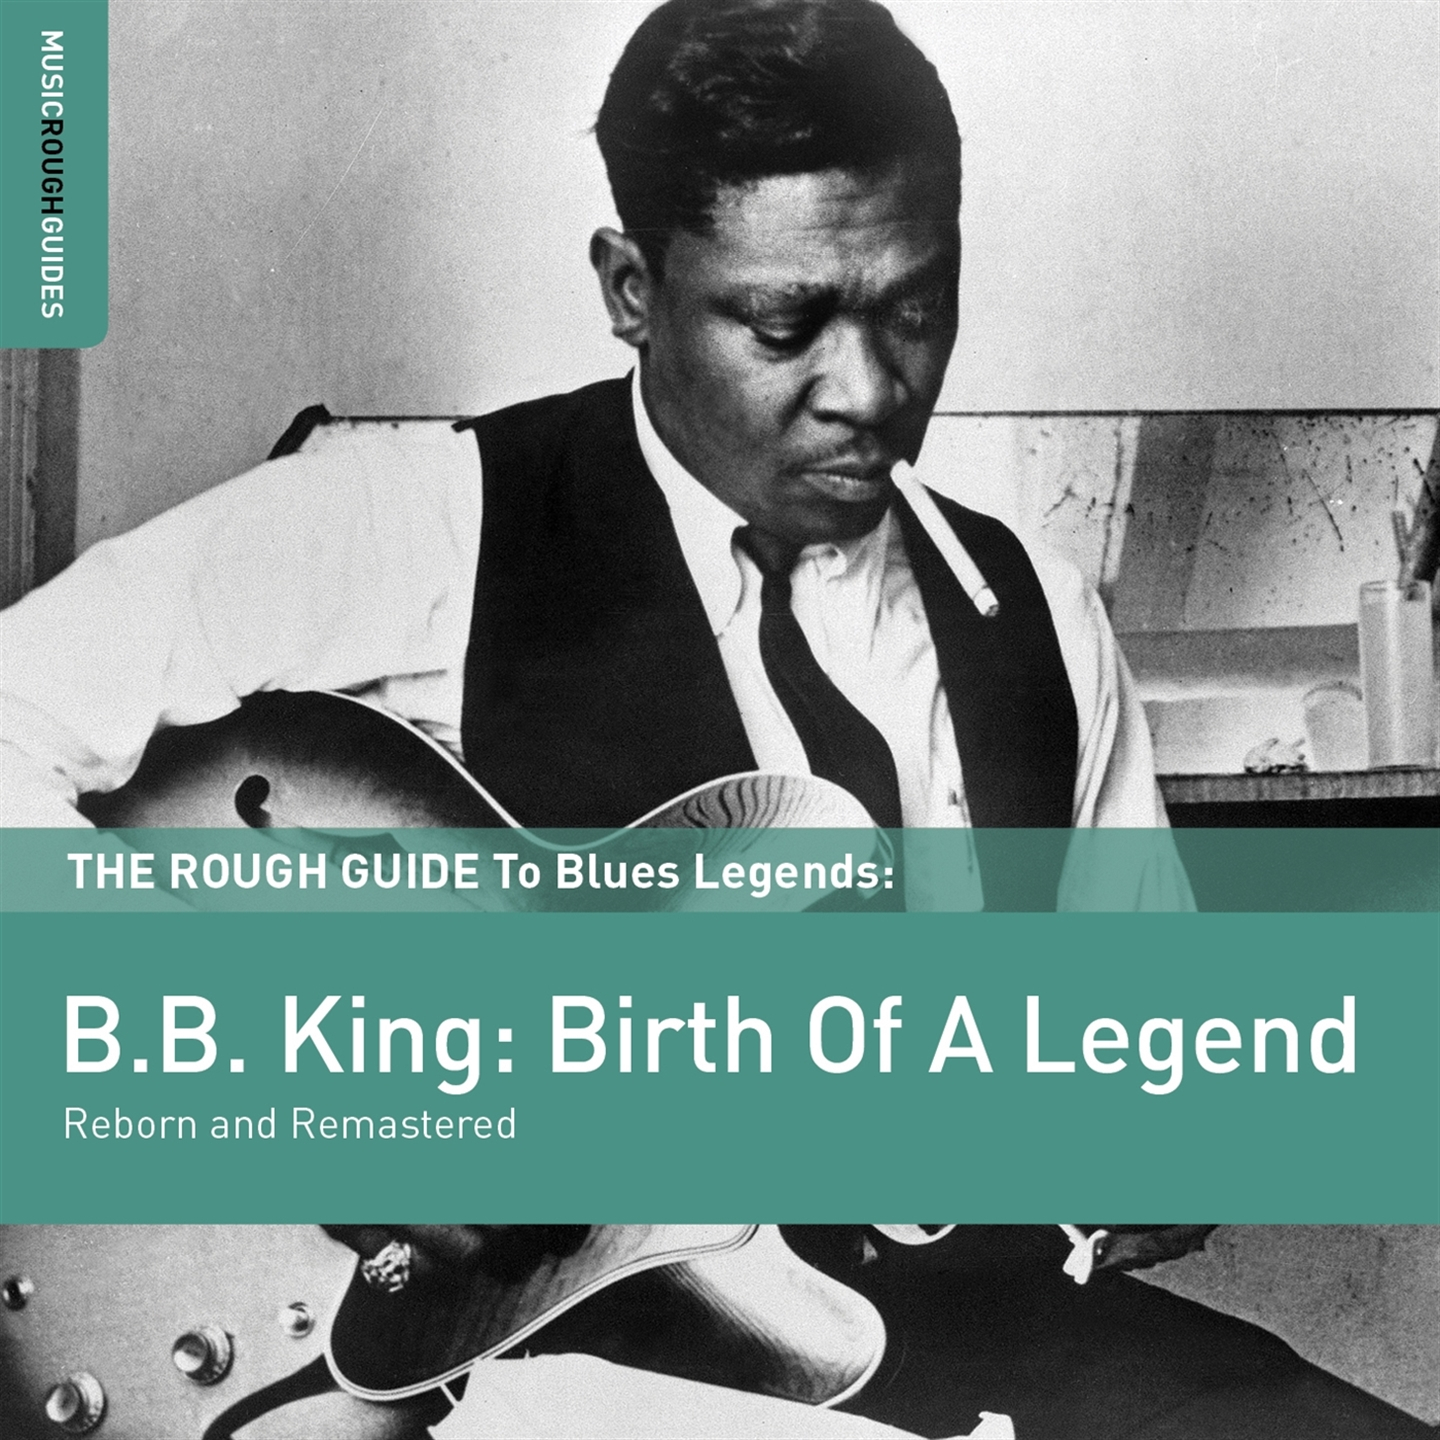 B.B. KING: BIRTH OF A LEGEND